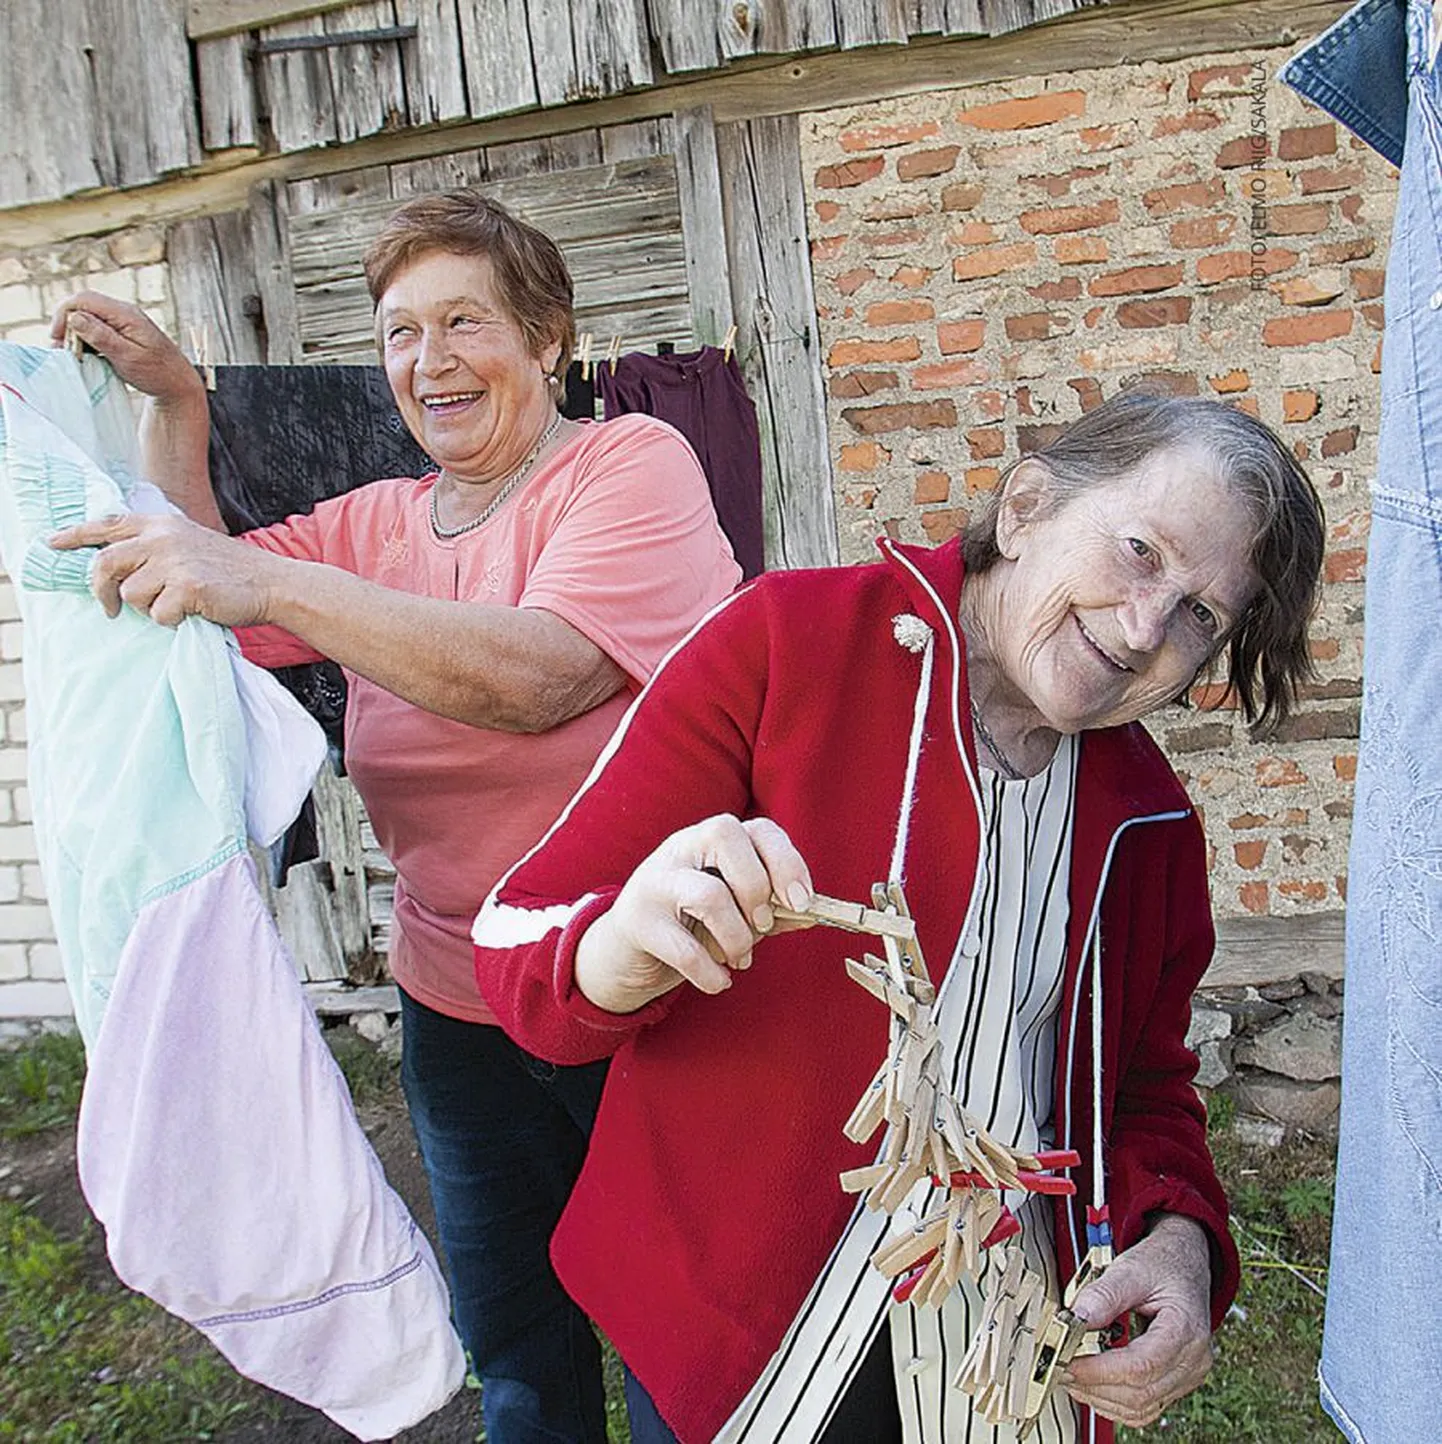 Ikka rõõmsas koostöös. 77aastane Linda Paas ei ulata ise pesu kuivama panna. Linda annab oma isiklikule abistajale, 67aastasele Anne Arrile puhtaks küüritud pesu ja Anne riputab selle siis nöörile kuivama.